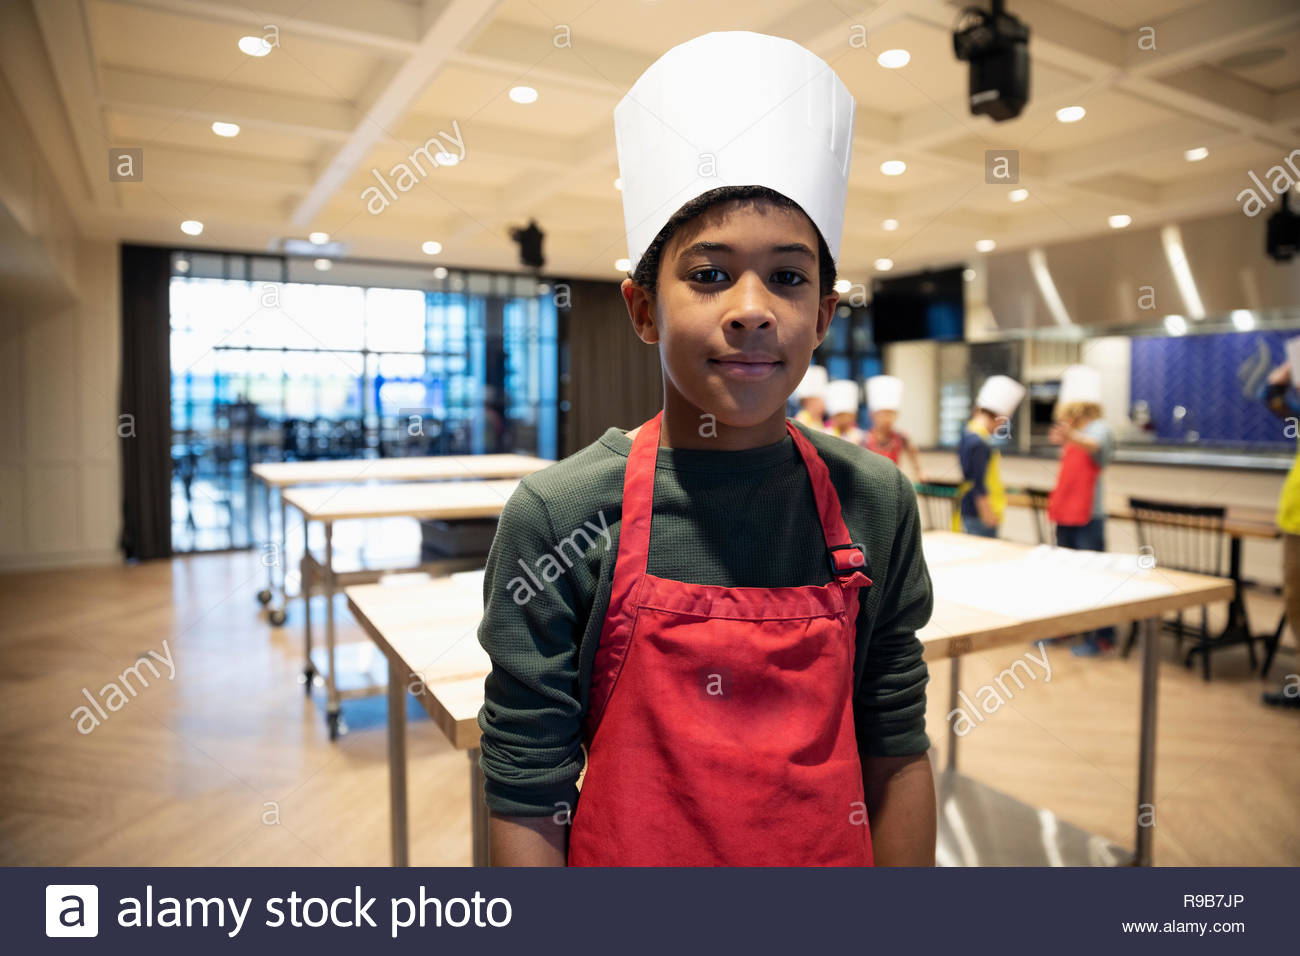 Retrato de niño confiado en clase de cocina Foto de stock